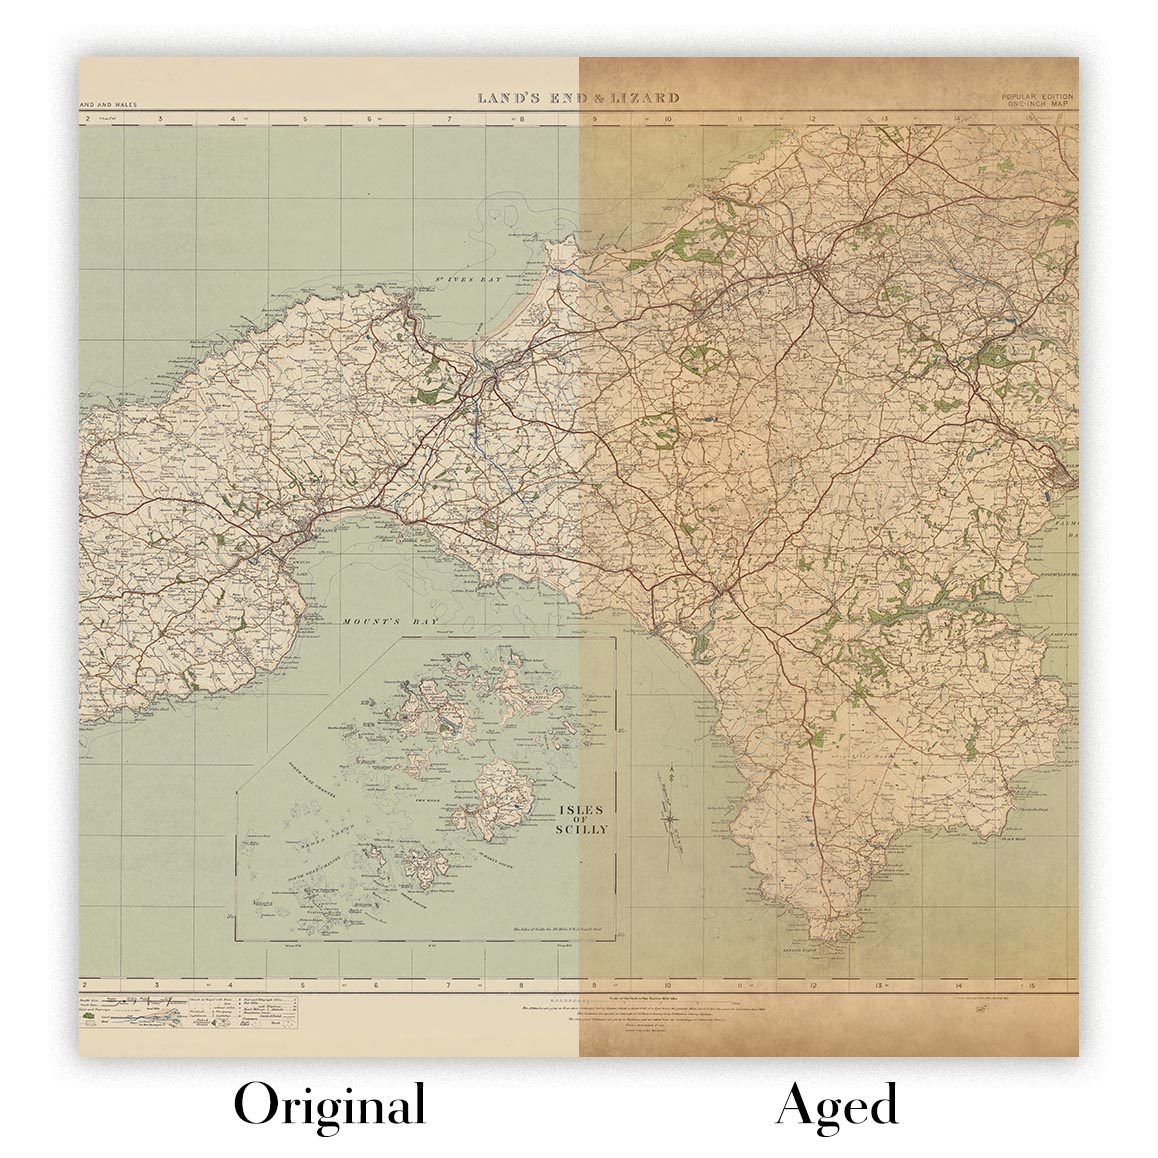 Ancienne carte de l'Ordnance Survey - Feuille 146 Lands End & Lizard, 1919-1926 : Truro, Falmouth, St Ives, Penzance, Helston, St Michael's Mount, Lizard Point